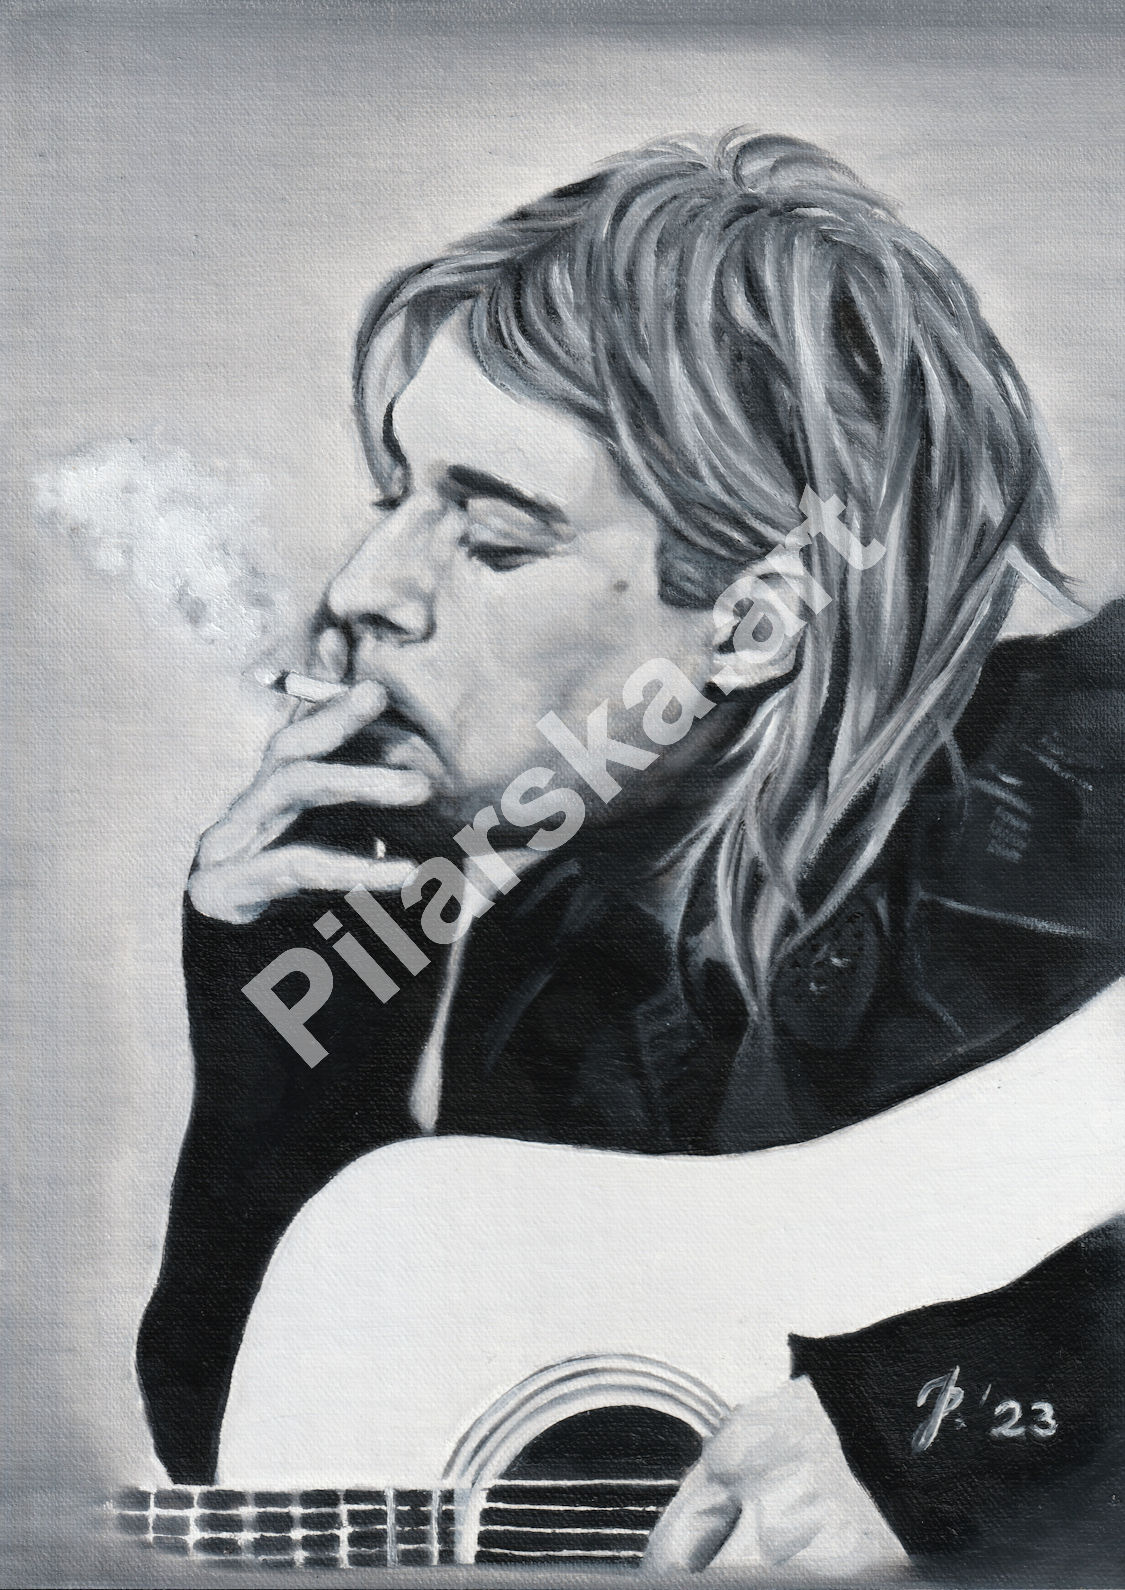 Kurt Cobain - Nirvana - portret olejny artysty muzyka wykonany na zamówienie ze zdjęcia